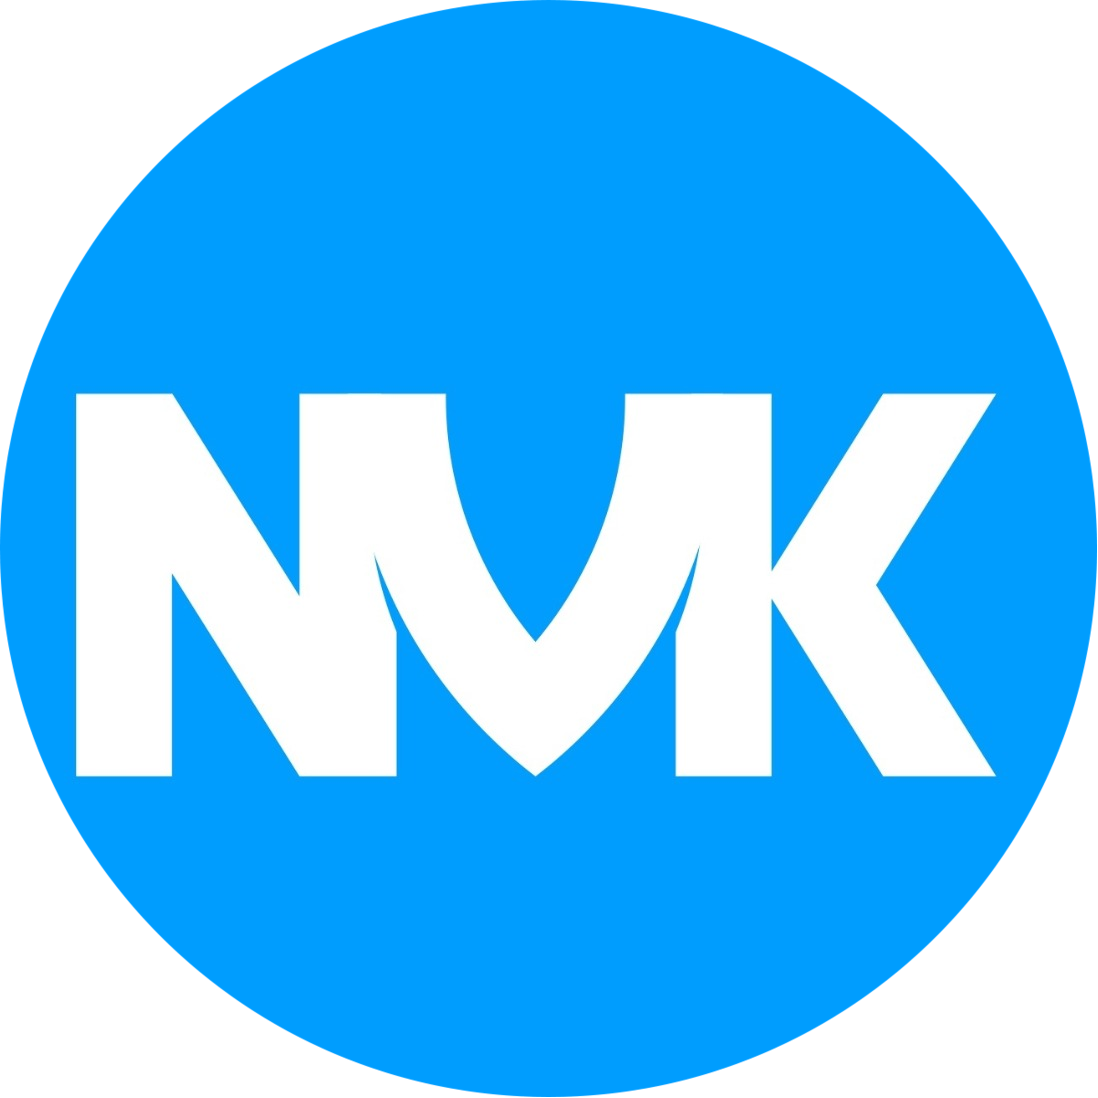 Раземщение рекламы Паблик ВКонтакте #NVK | Новоуральск ВКонтакте, г. Новоуральск